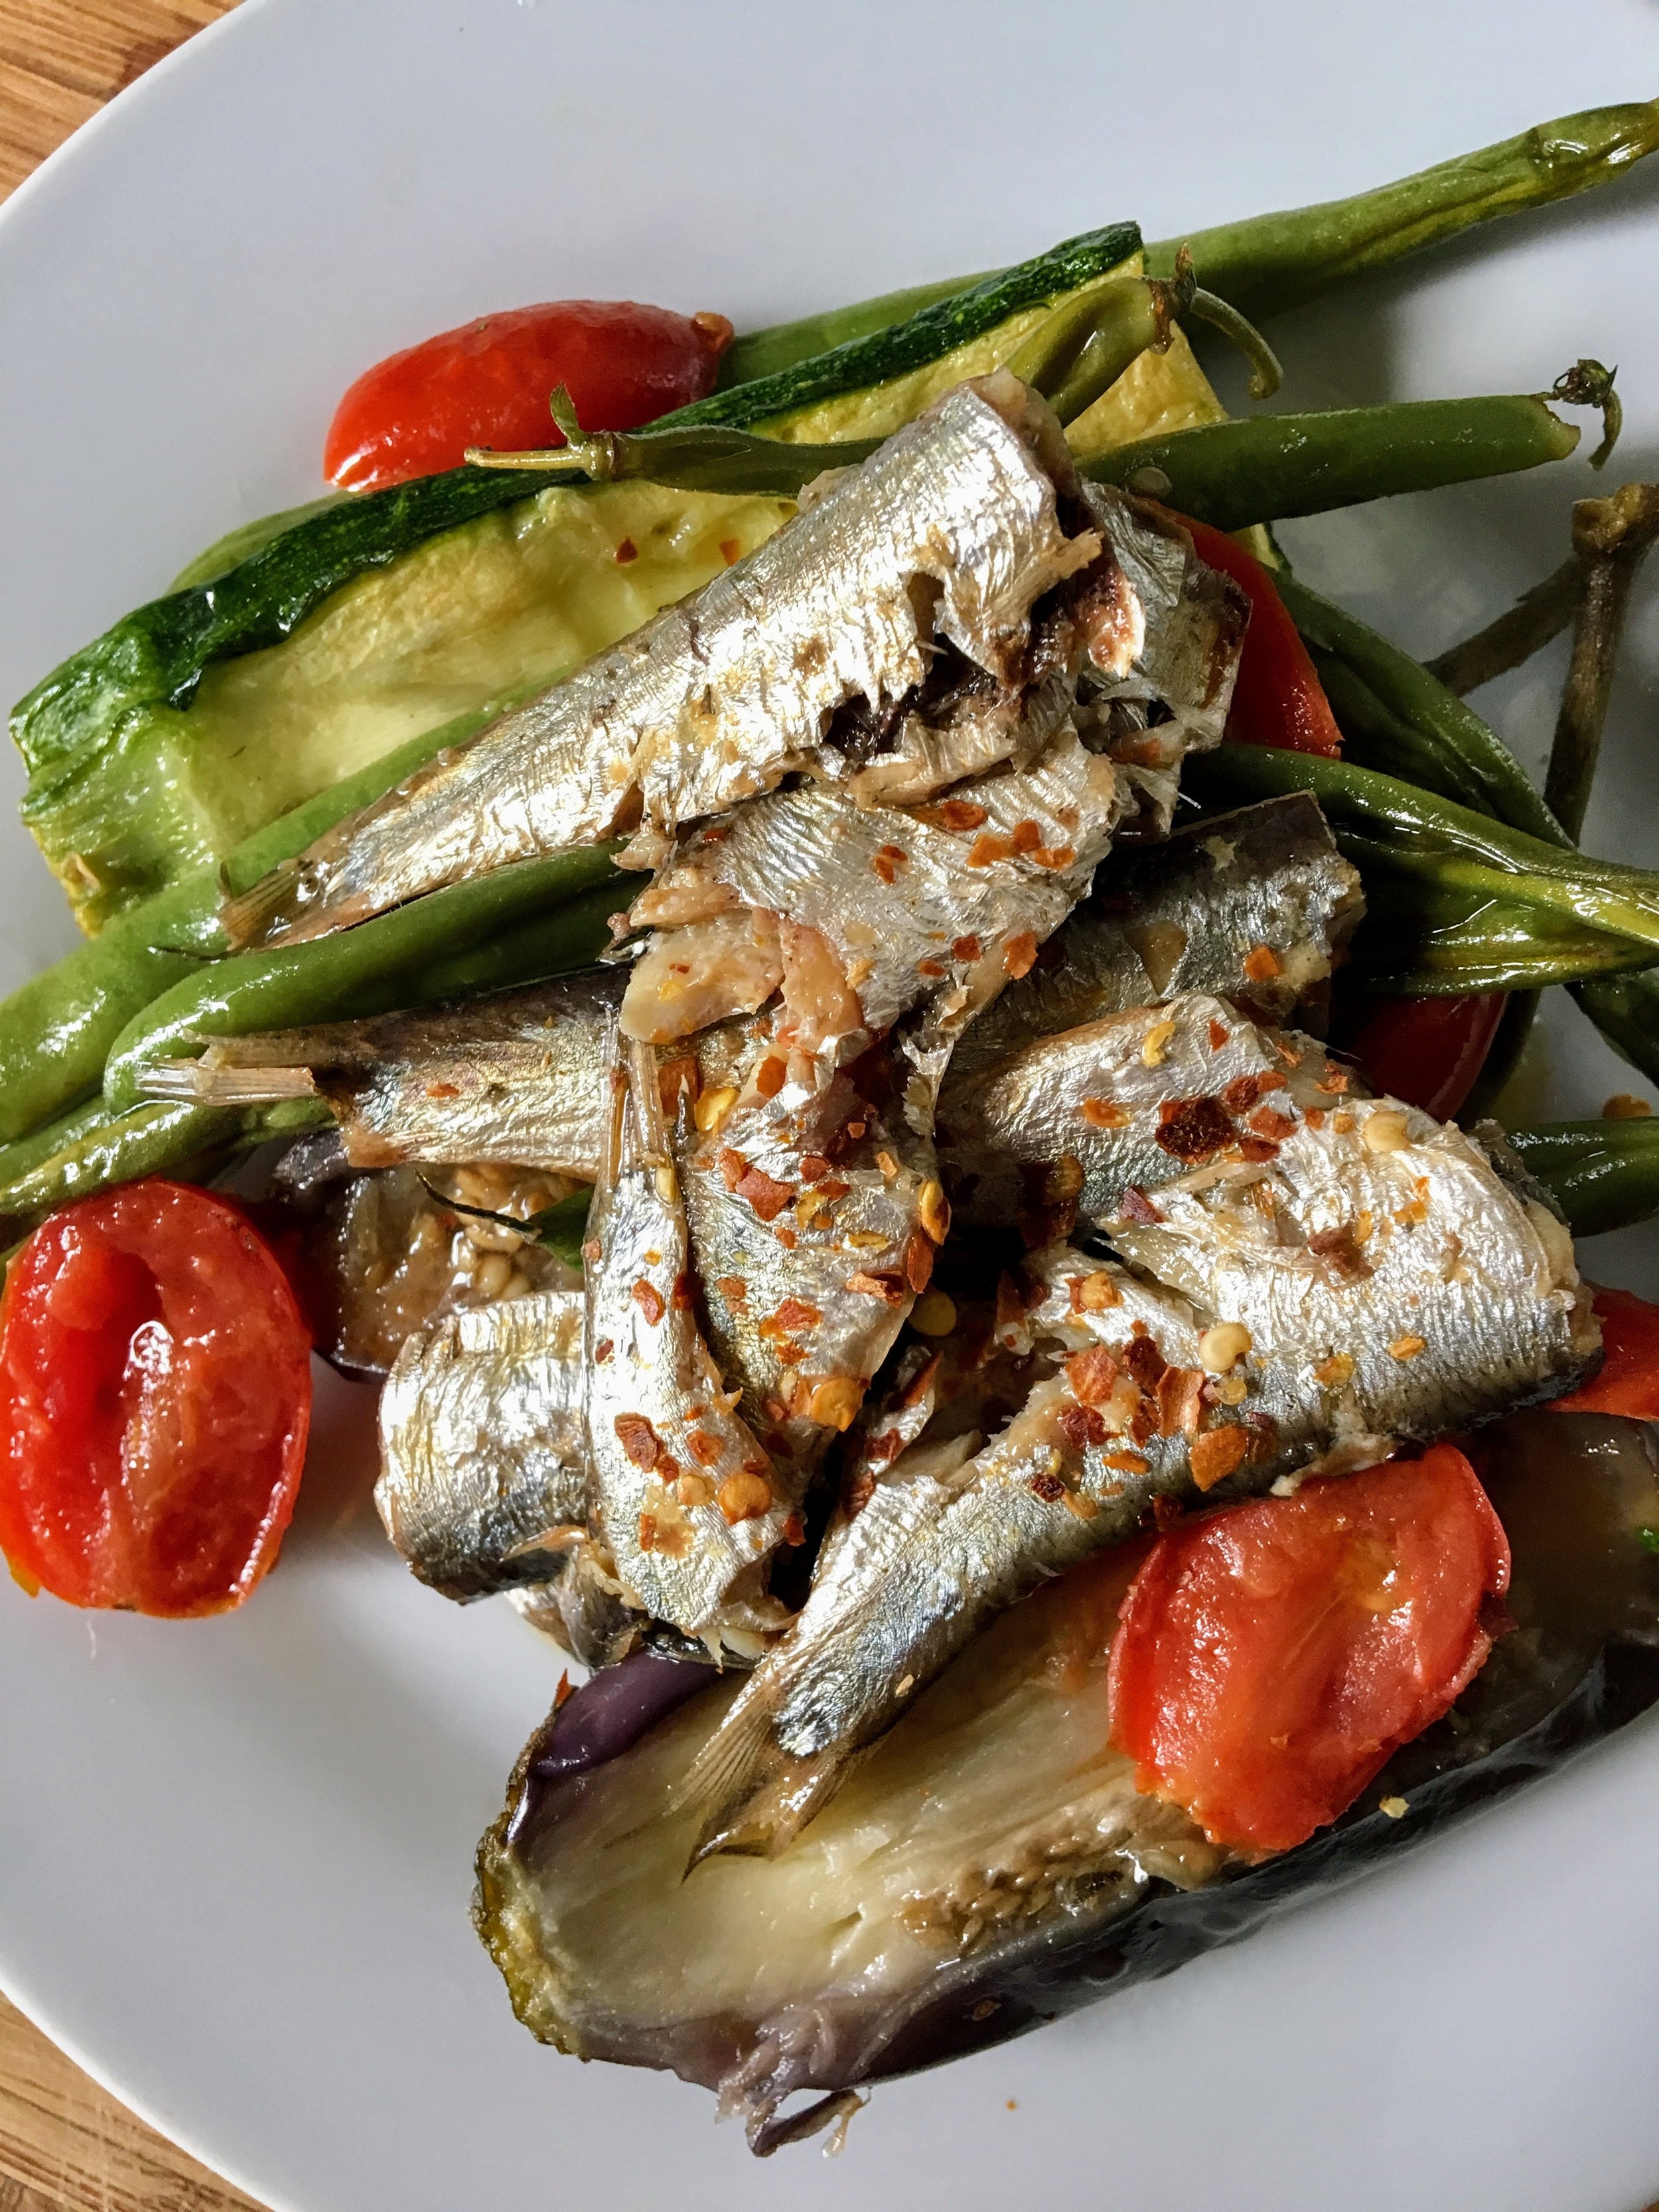 sardines and roasted veggies.JPG